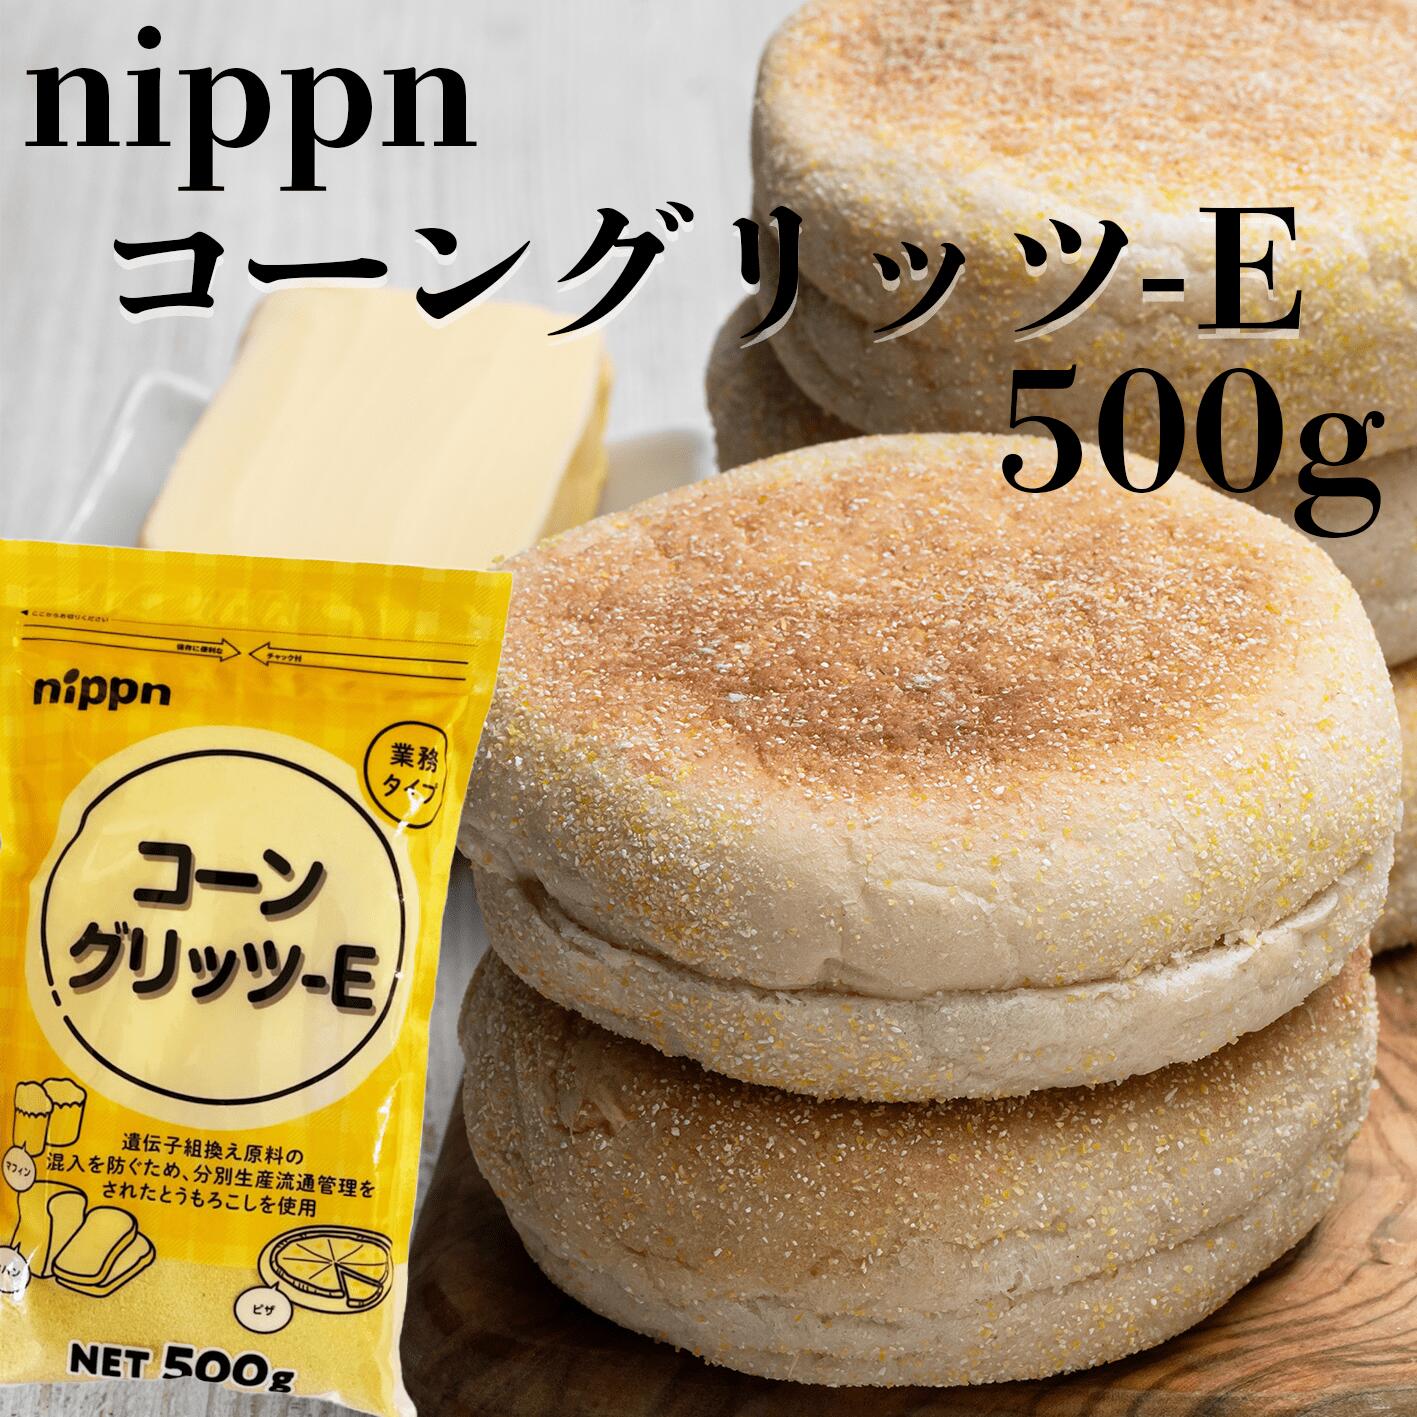 nippn コーングリッツ-E マフィン 食パン ピザ 製パン 製菓